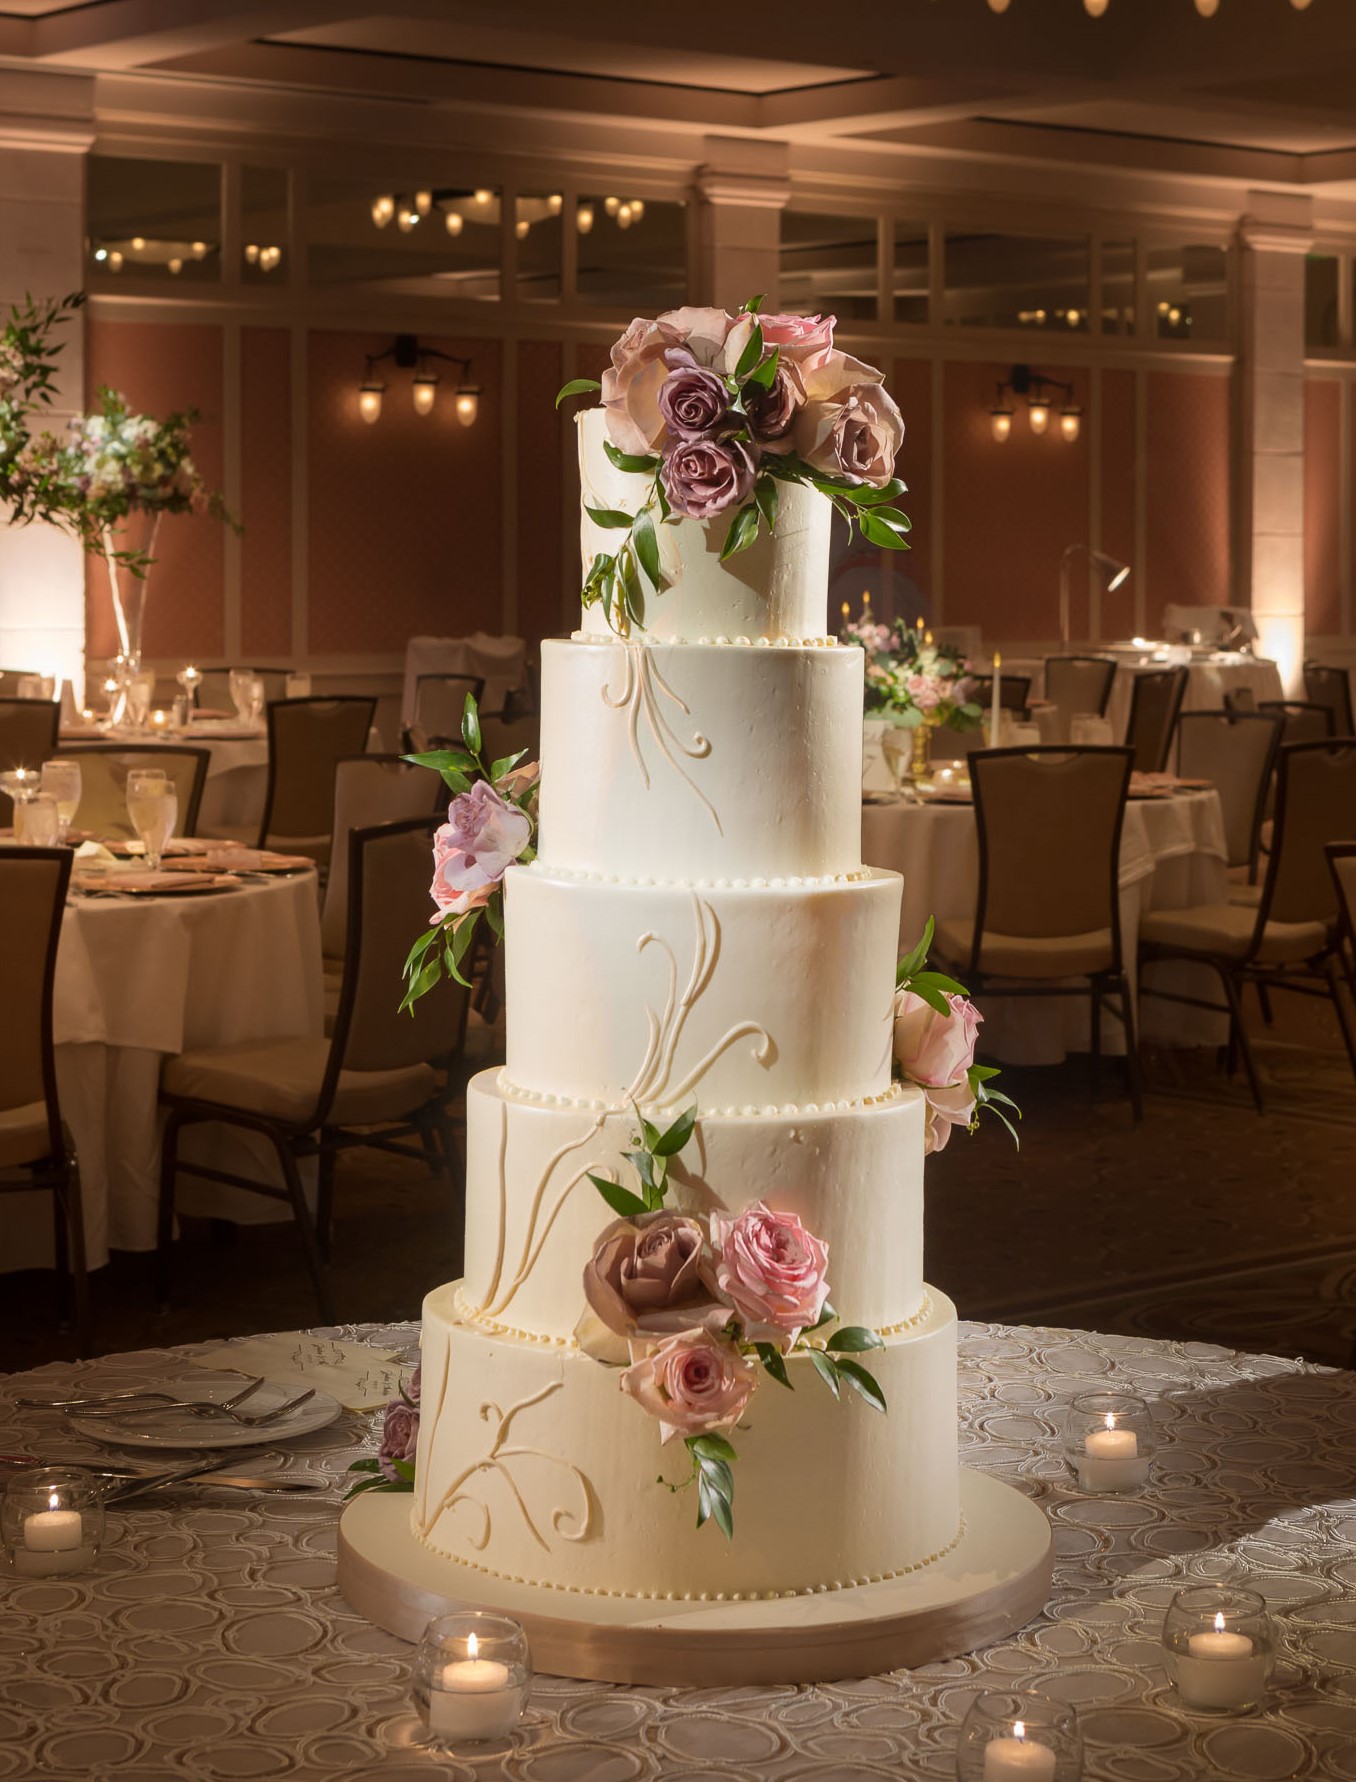 Using Fresh Flowers On Your Wedding Cake Wedding Cakes Topweddingsites Com